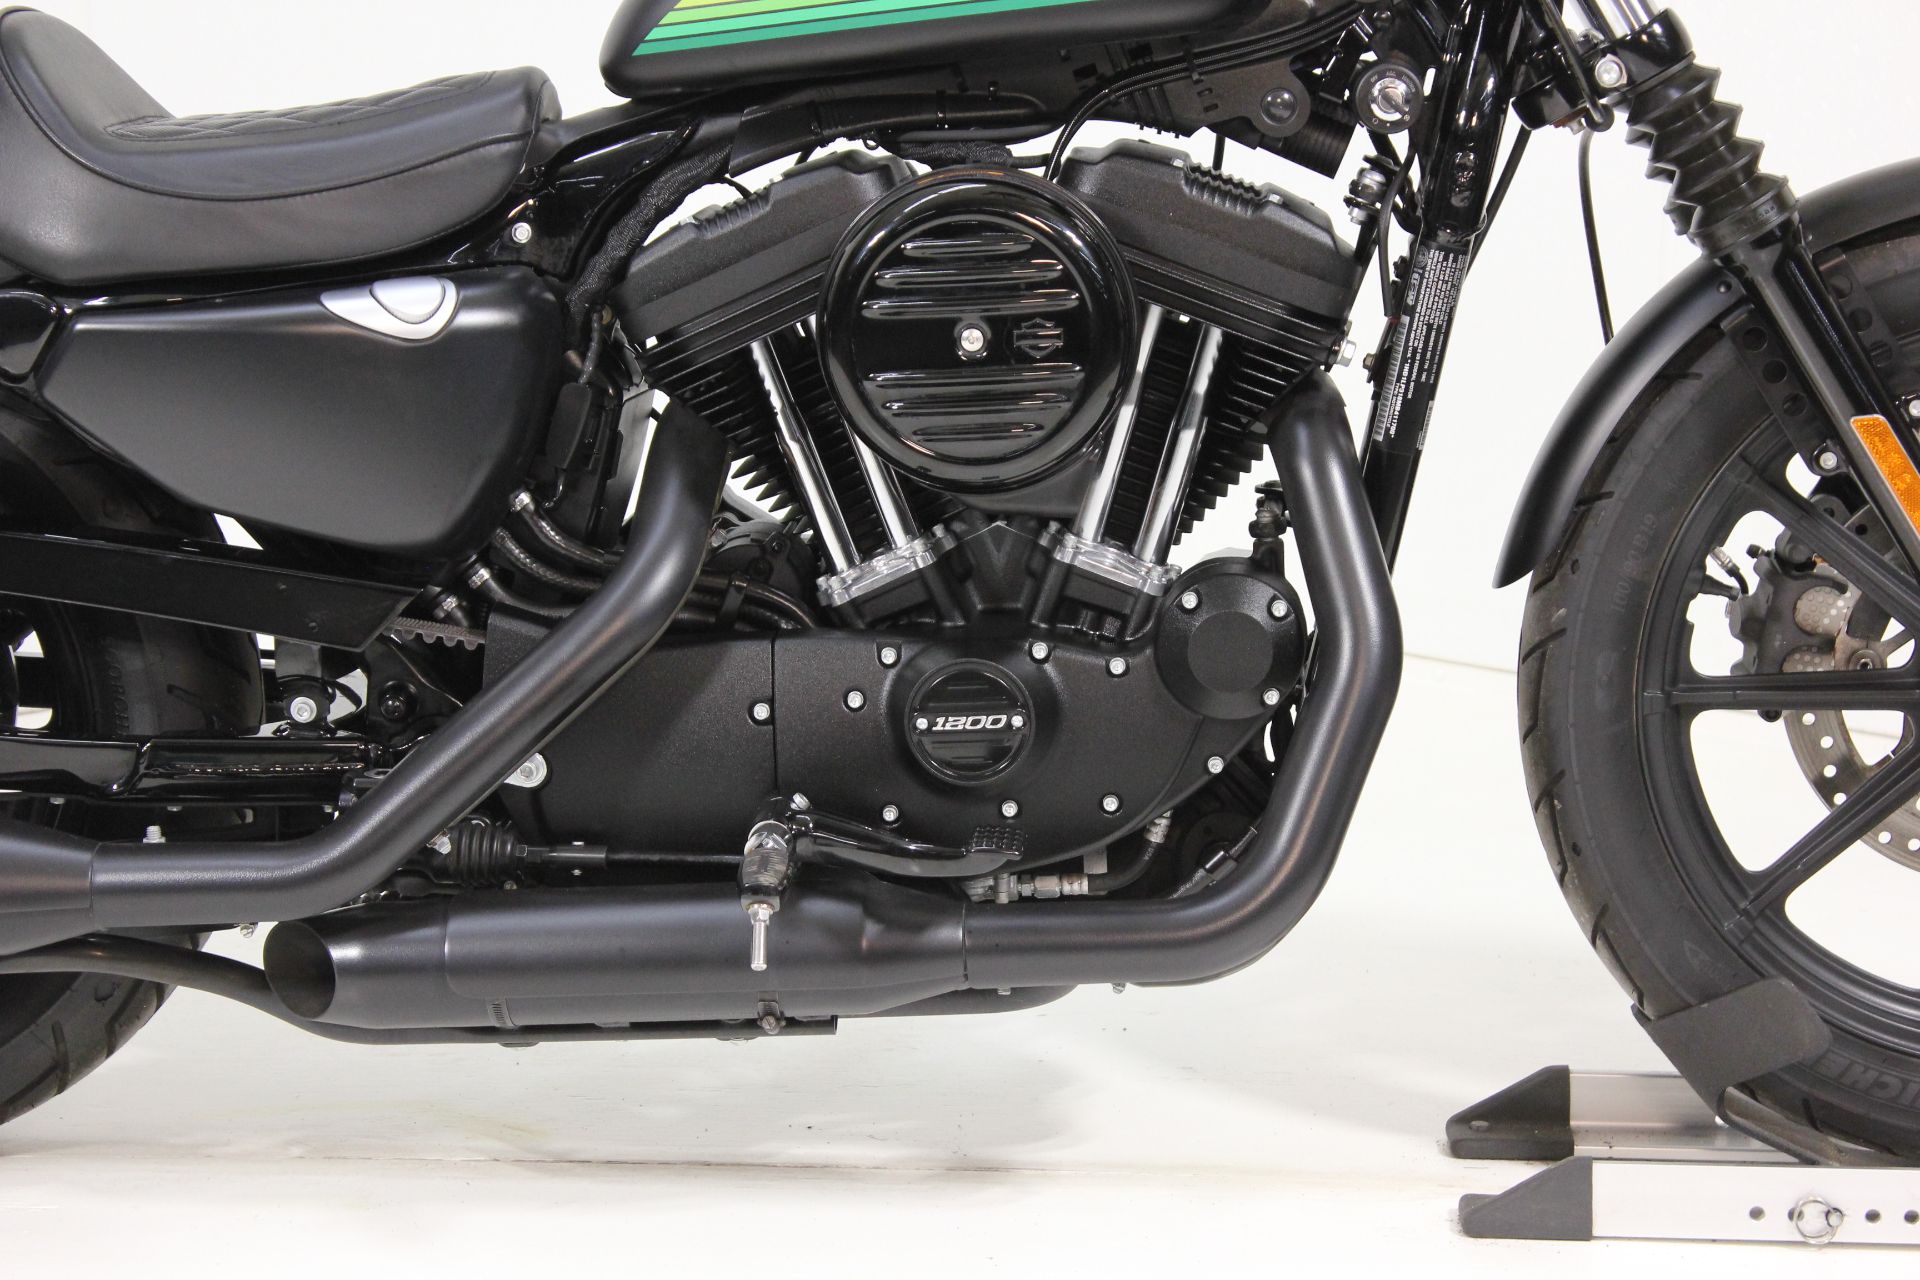 2021 Harley-Davidson Iron 1200™ in Pittsfield, Massachusetts - Photo 13